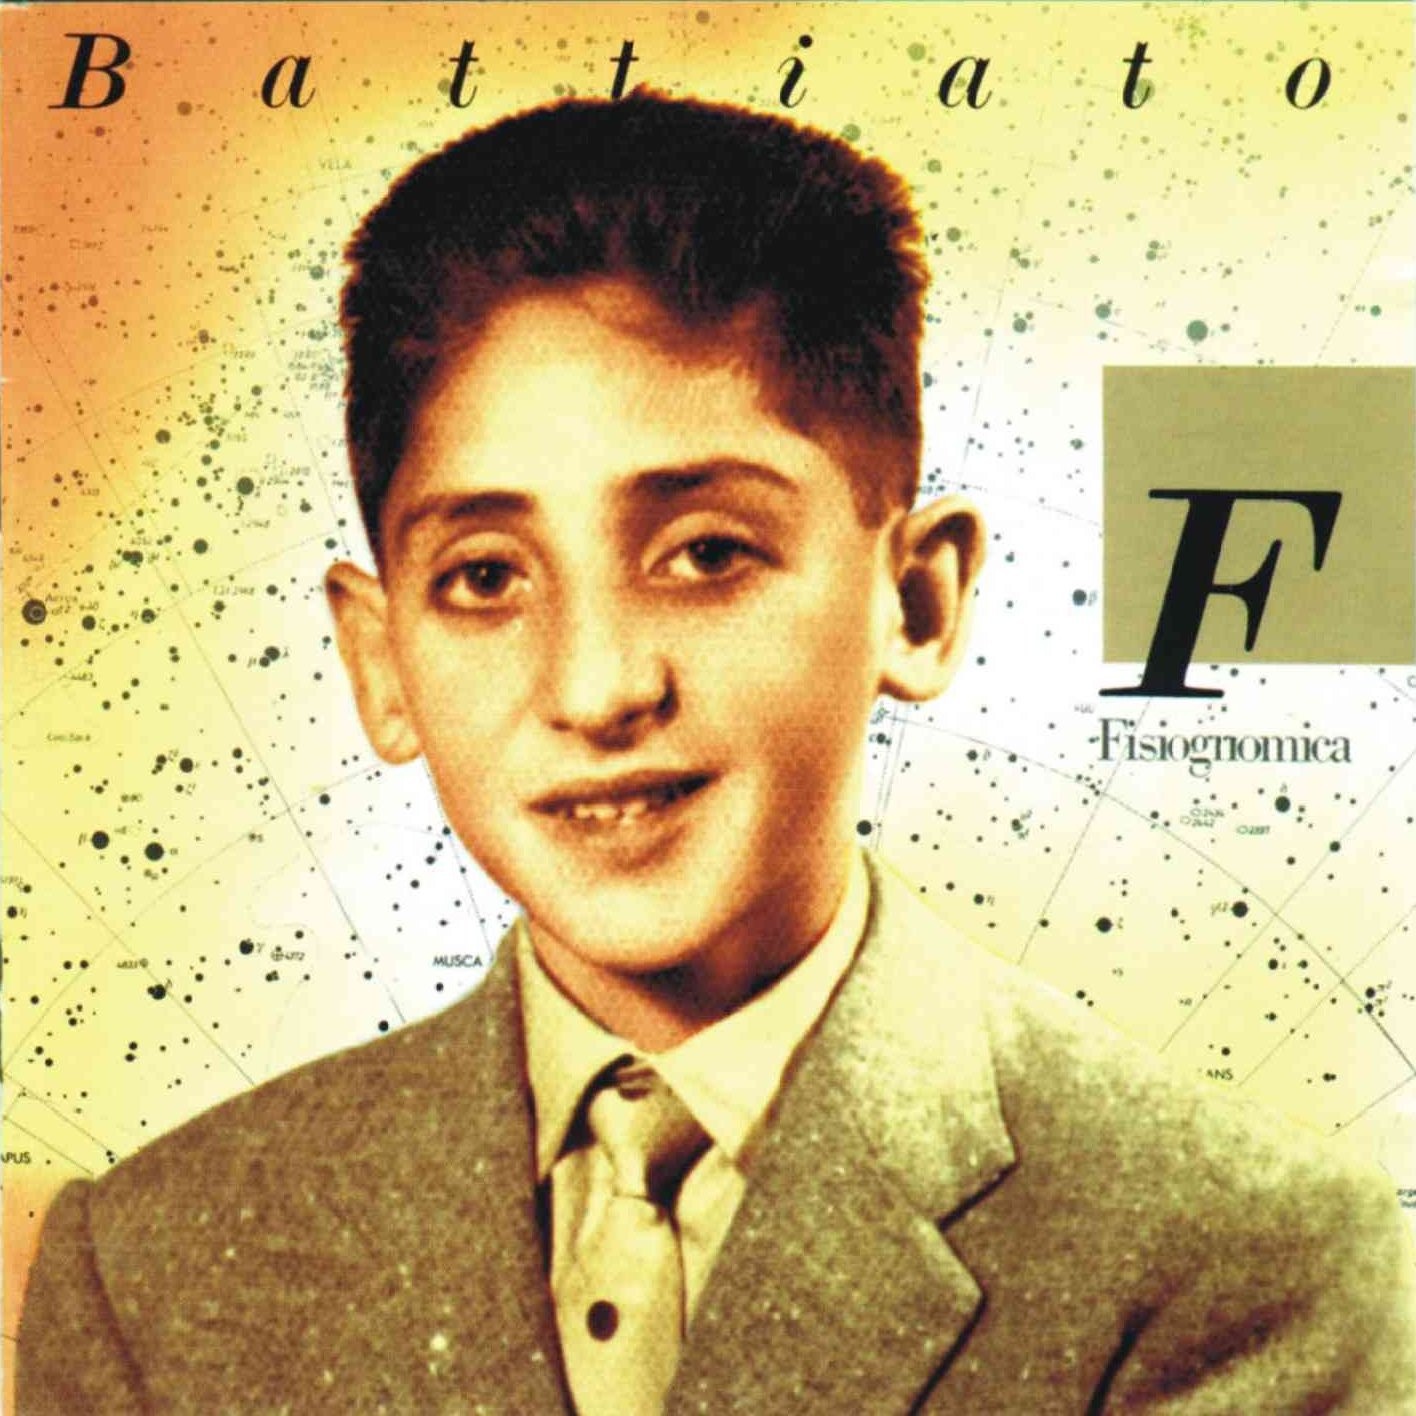 Franco Battiato - Fisiognomica (1988)